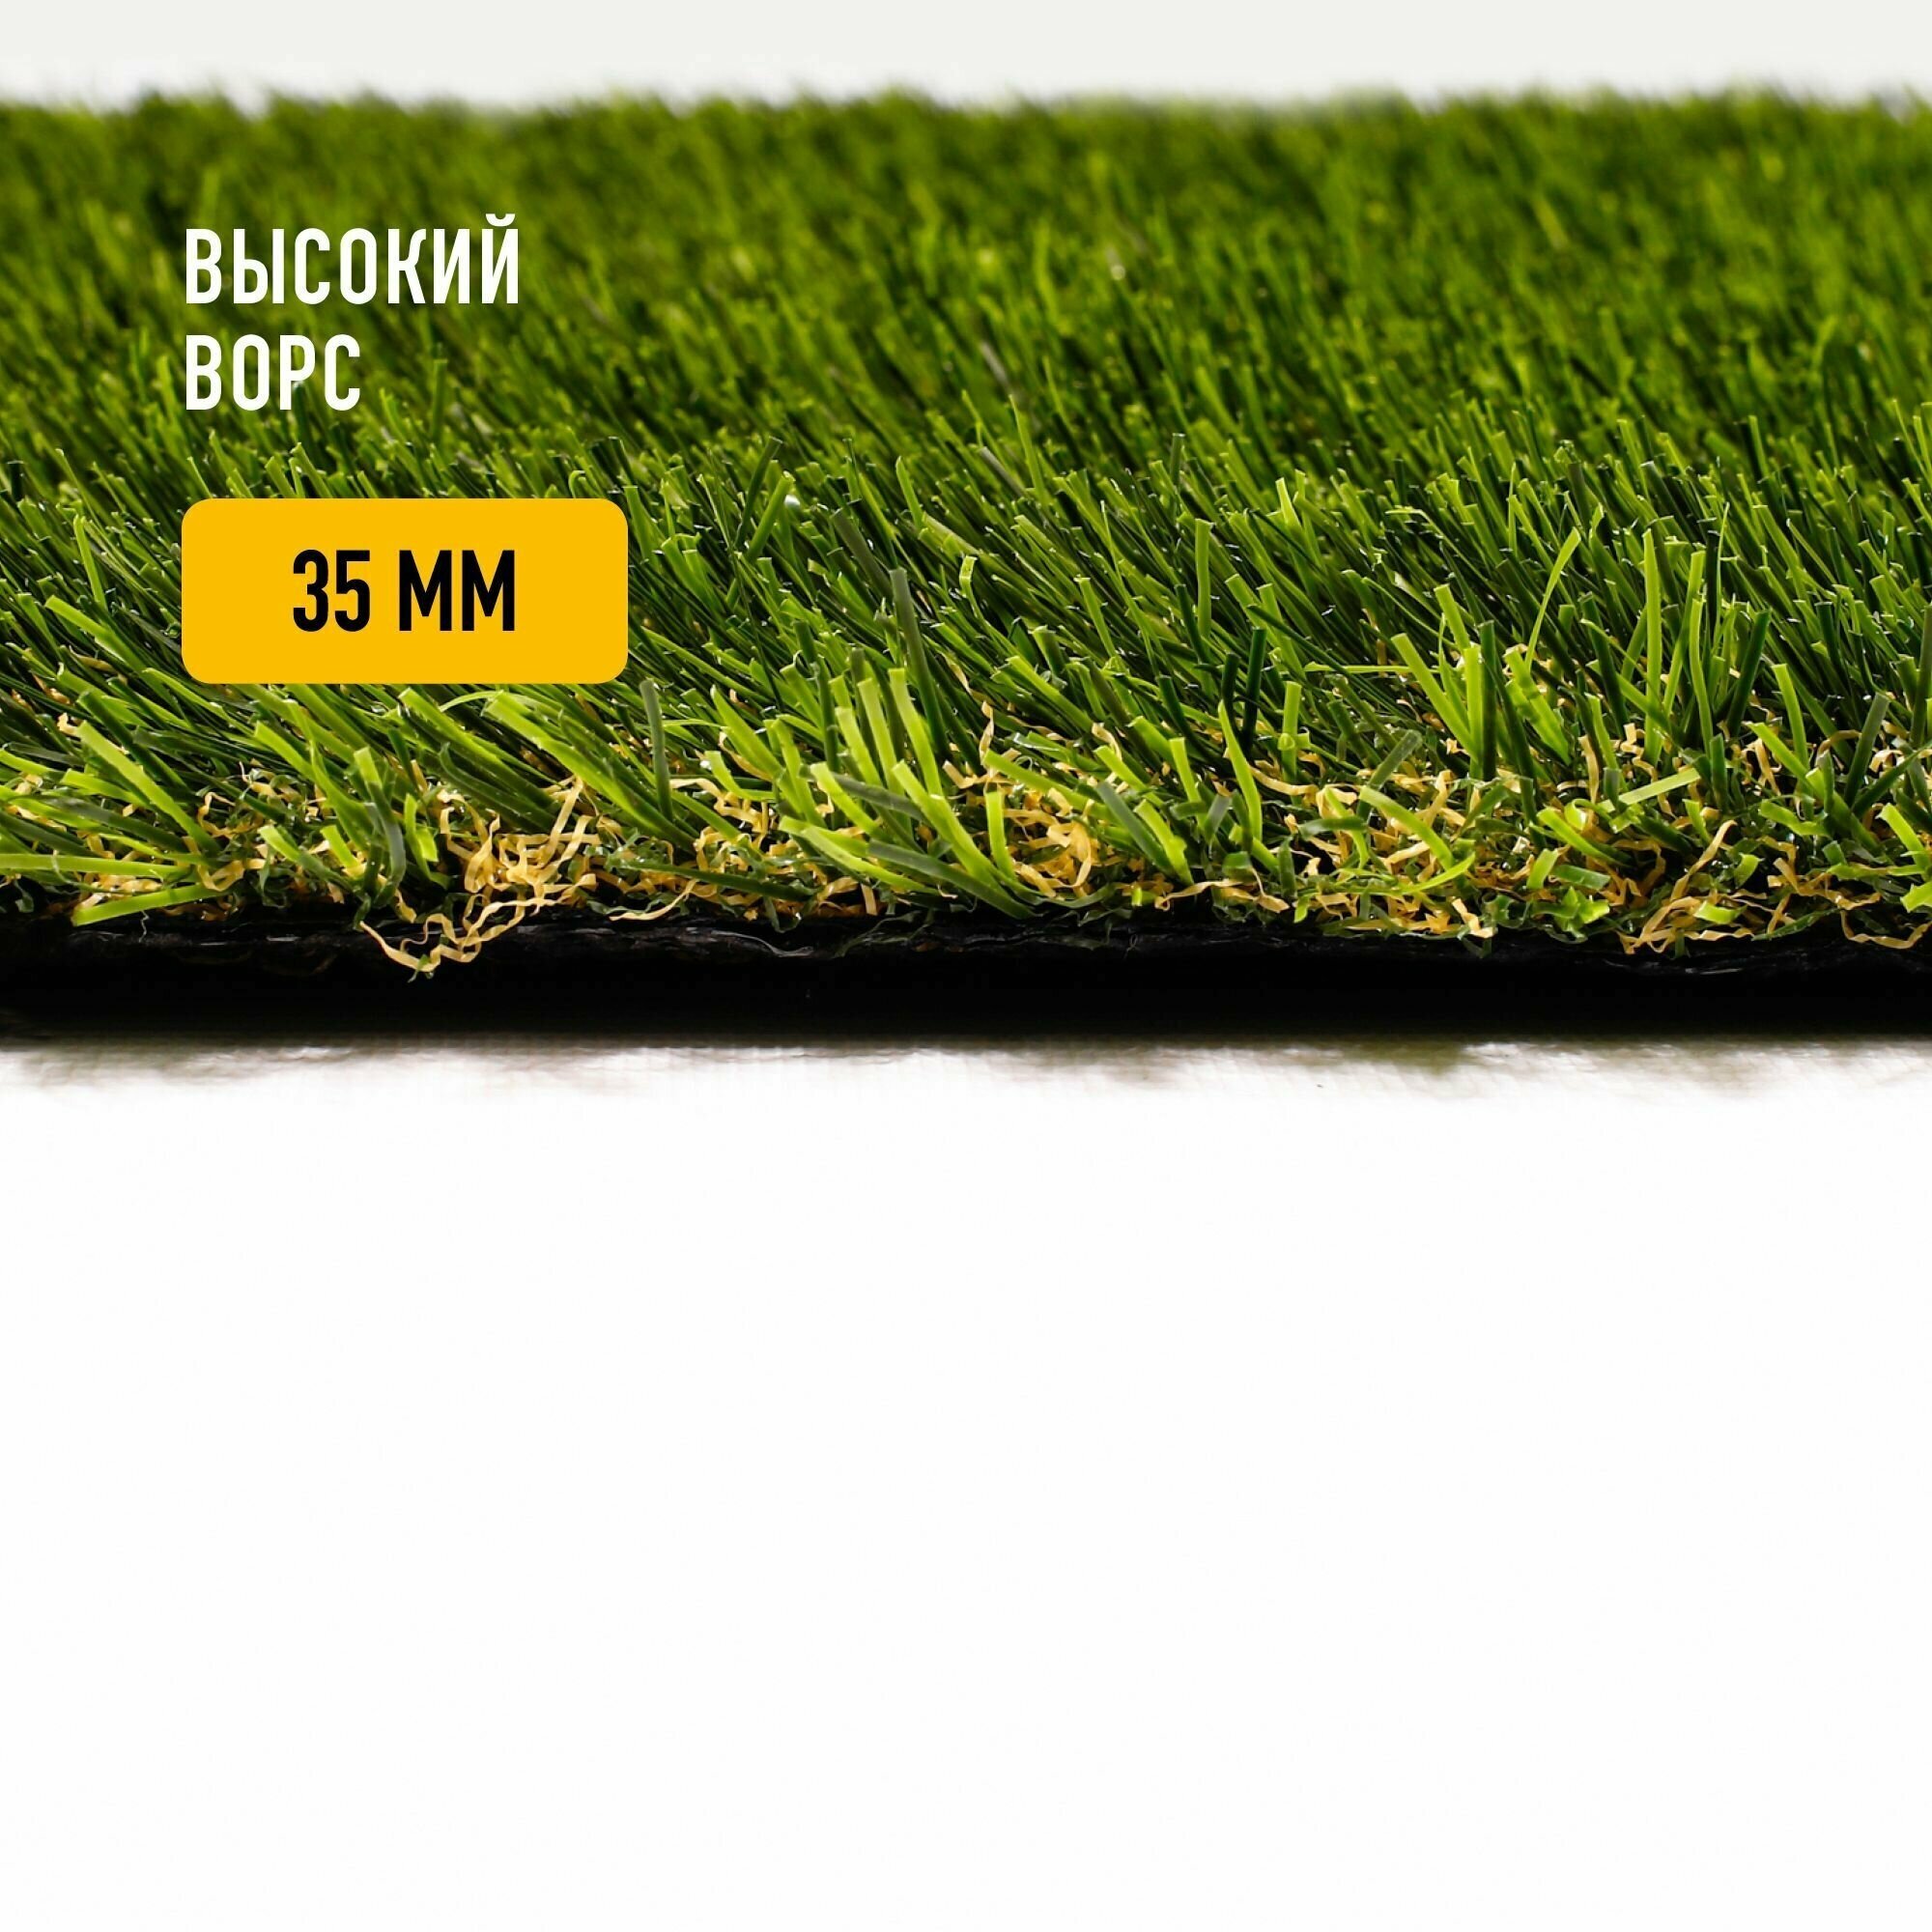 Искусственный газон 2х2,5 м в рулоне Premium Grass True 35 Green Bicolor, ворс 35 мм. Искусственная трава. 4919090-2х2,5 - фотография № 2